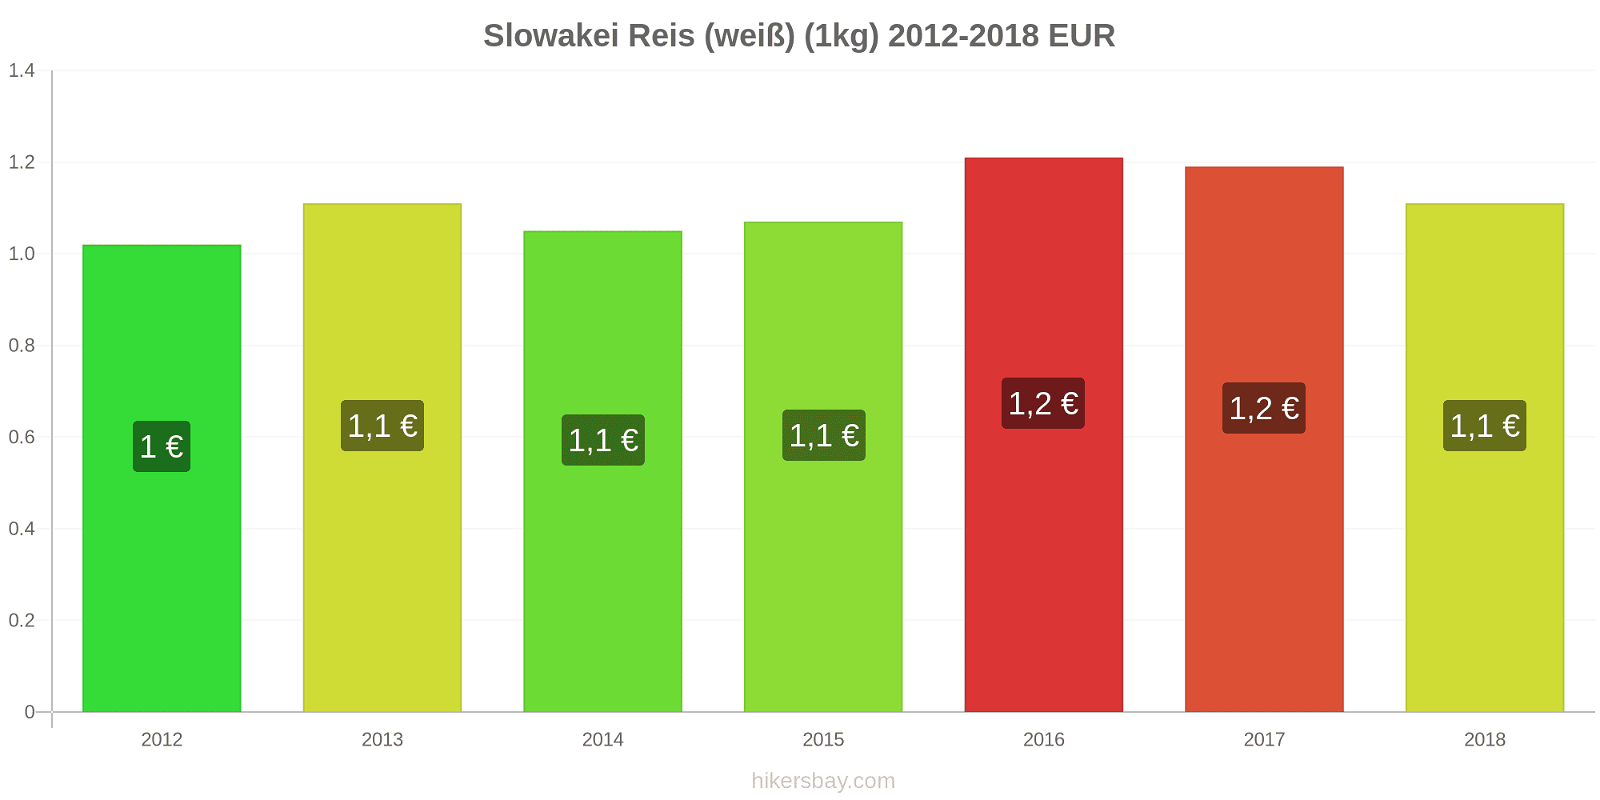 Slowakei Preisänderungen Reis (weiß) (1kg) hikersbay.com